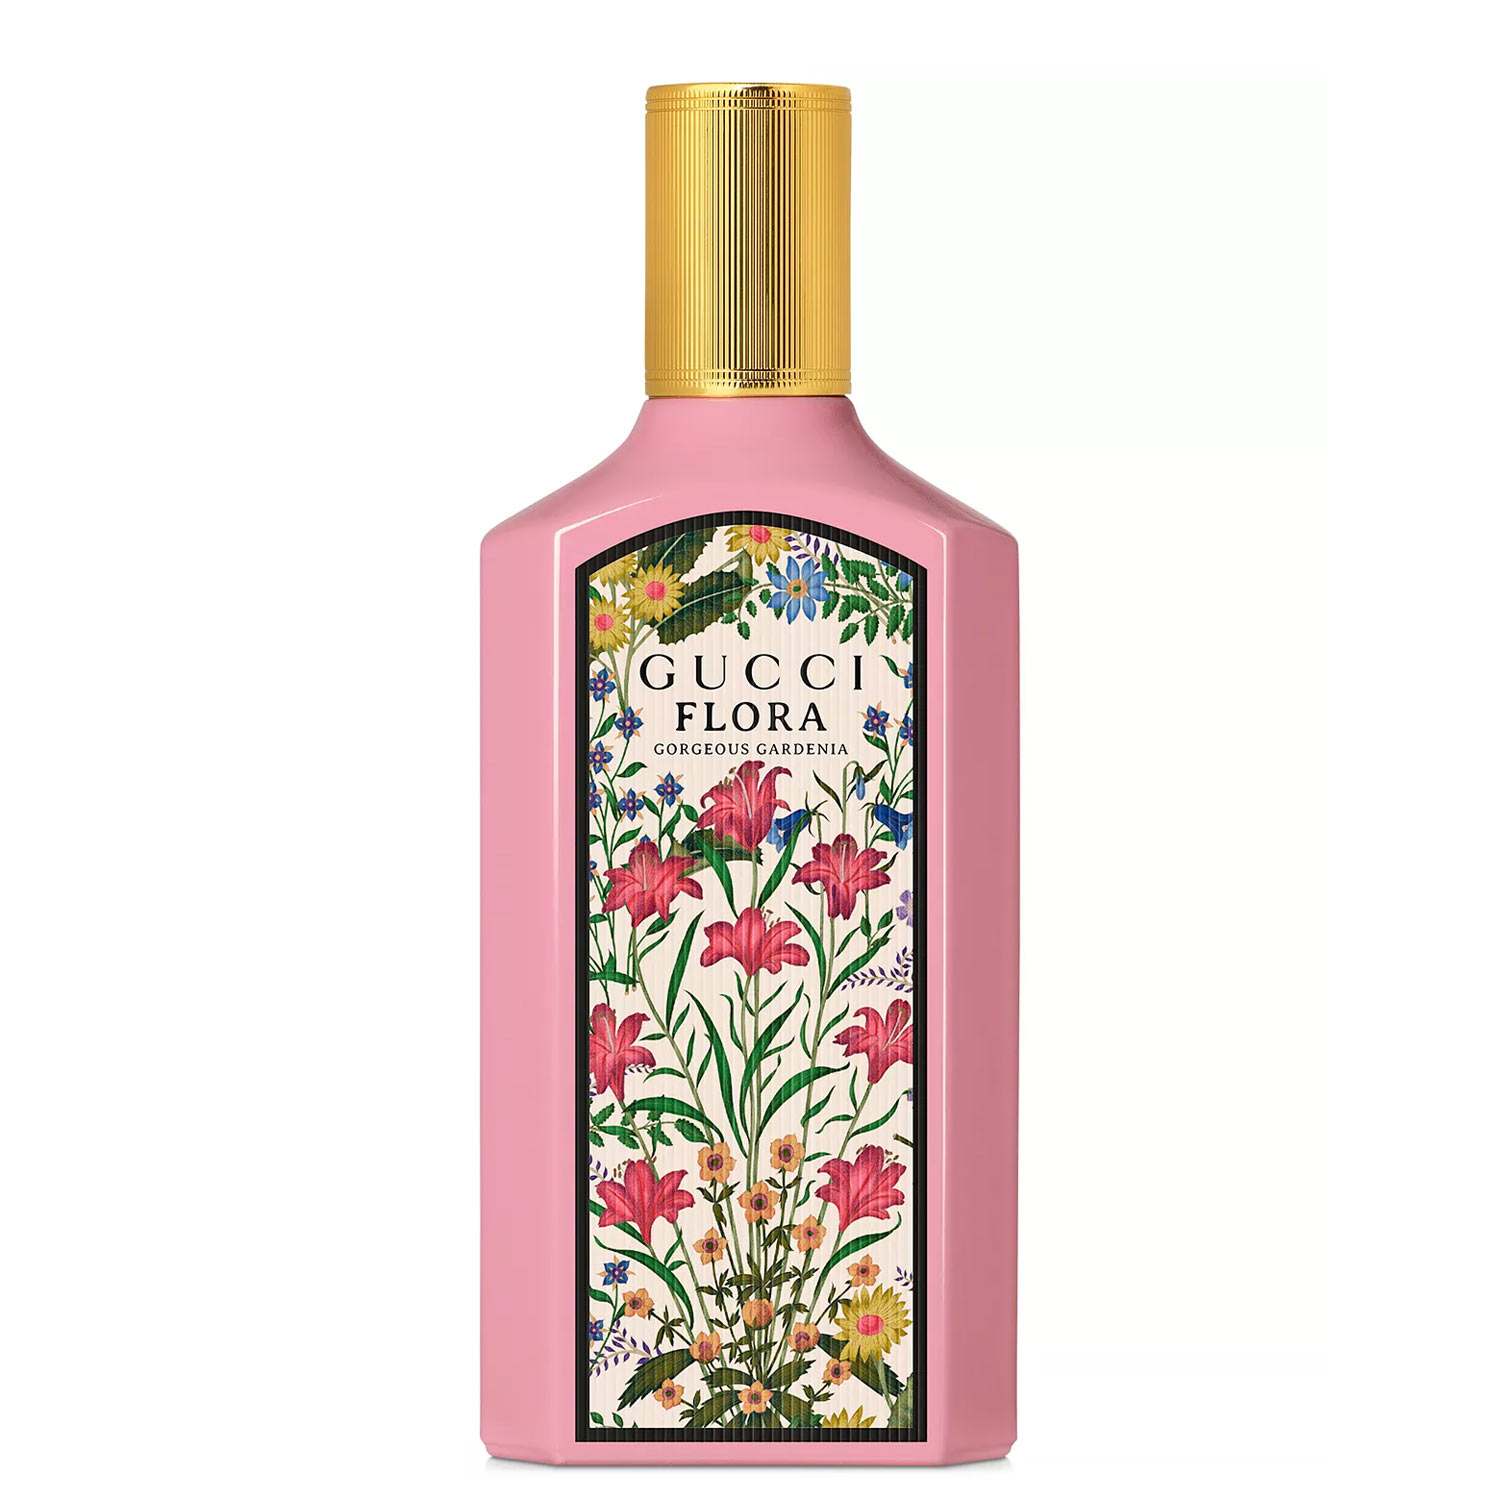 Flora Gorgeous Gardenia Eau de Parfum Gucci Image